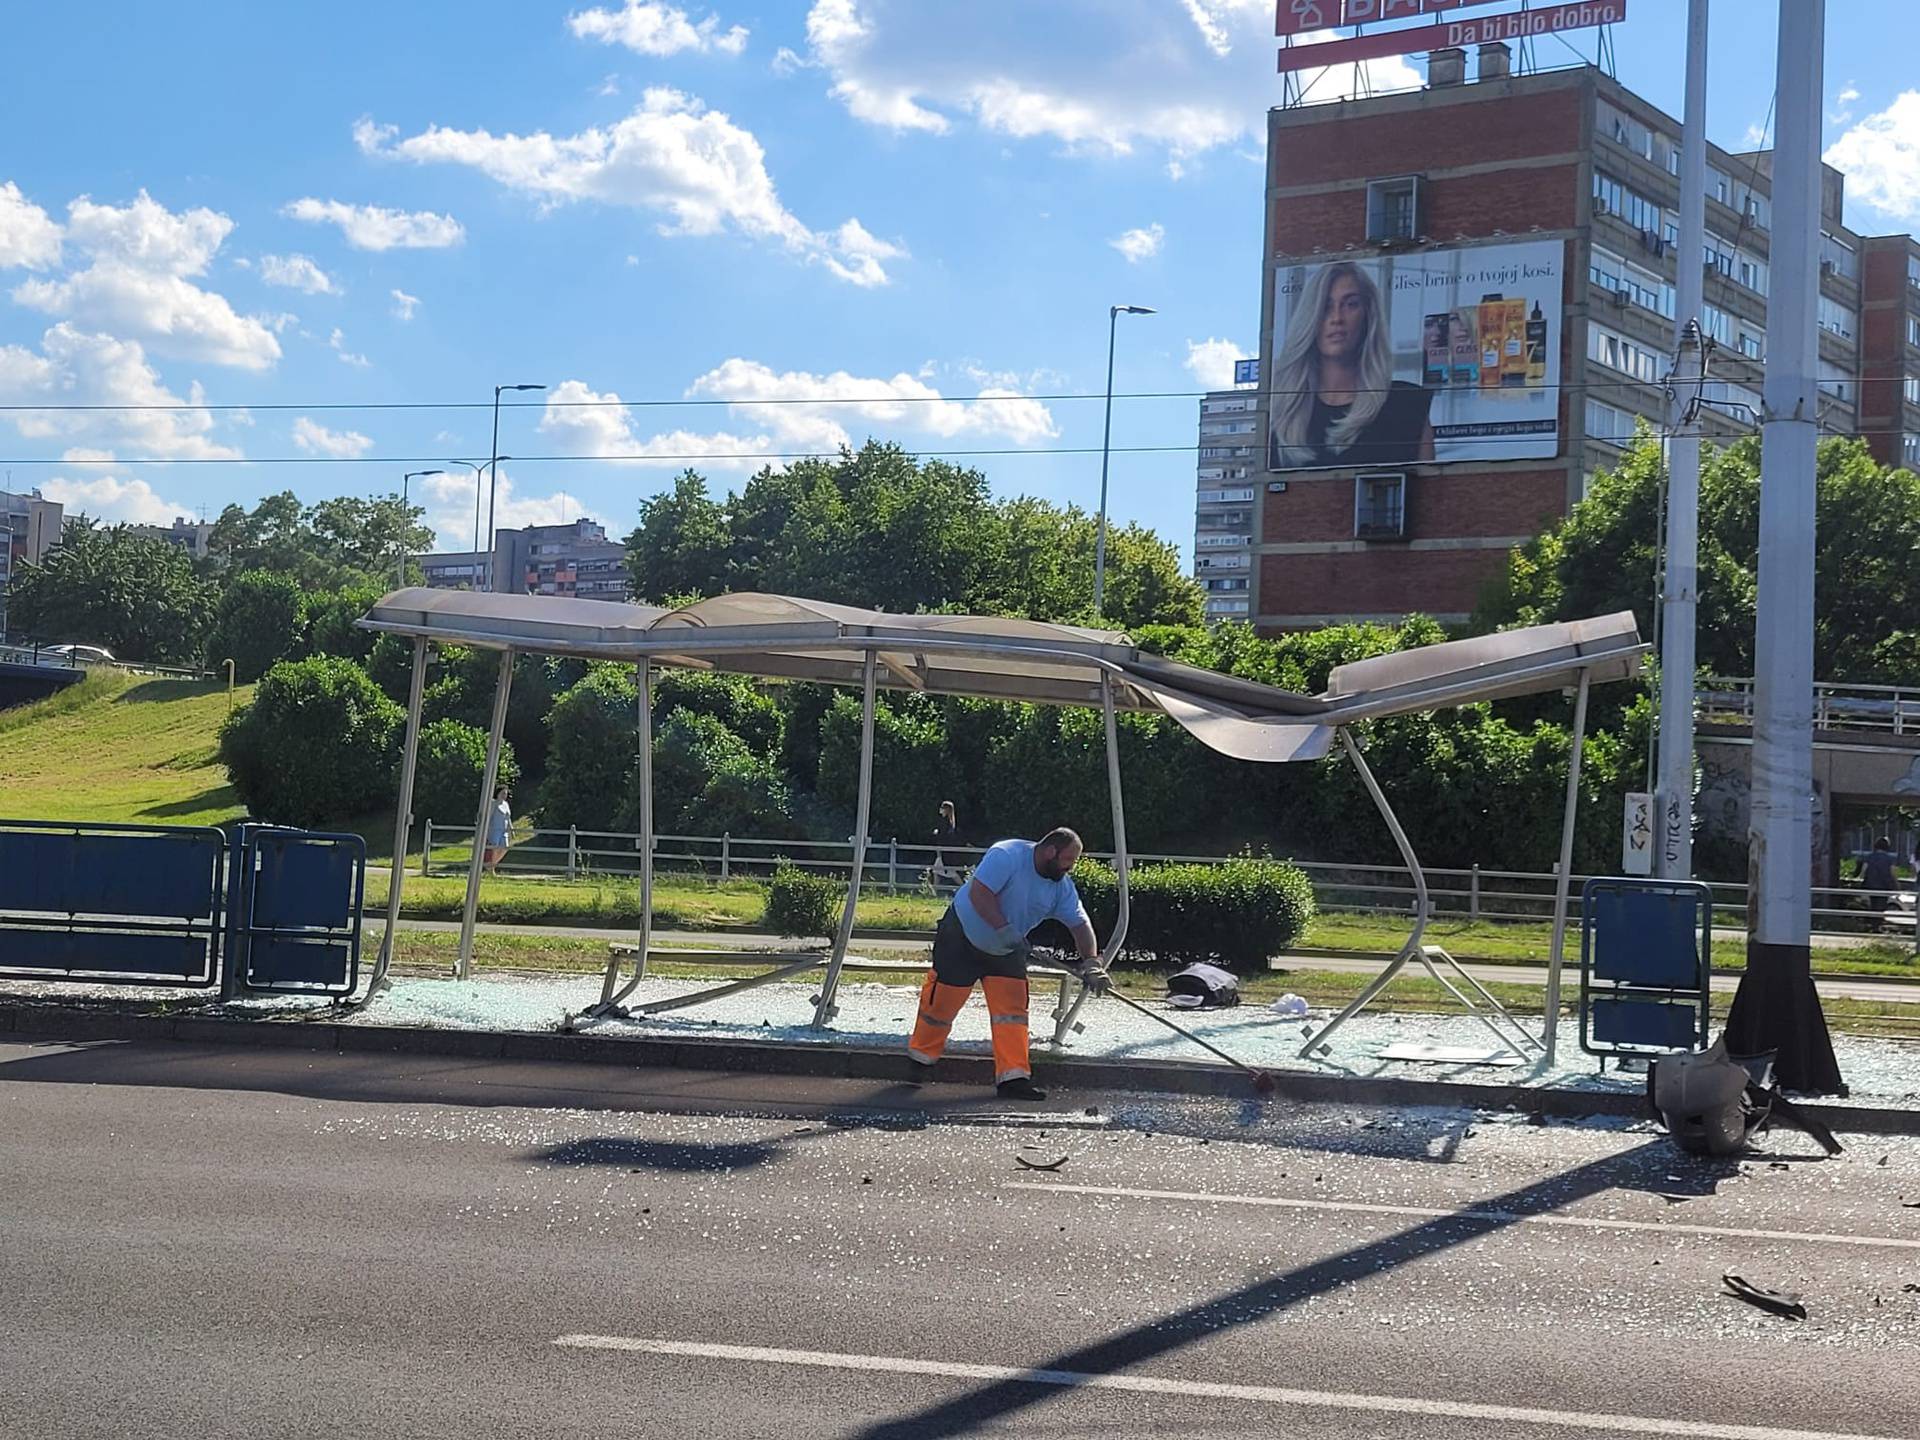 Vozač koji se mrtav pijan zaletio u tramvajsku stanicu je profesor sa zagrebačkog fakulteta